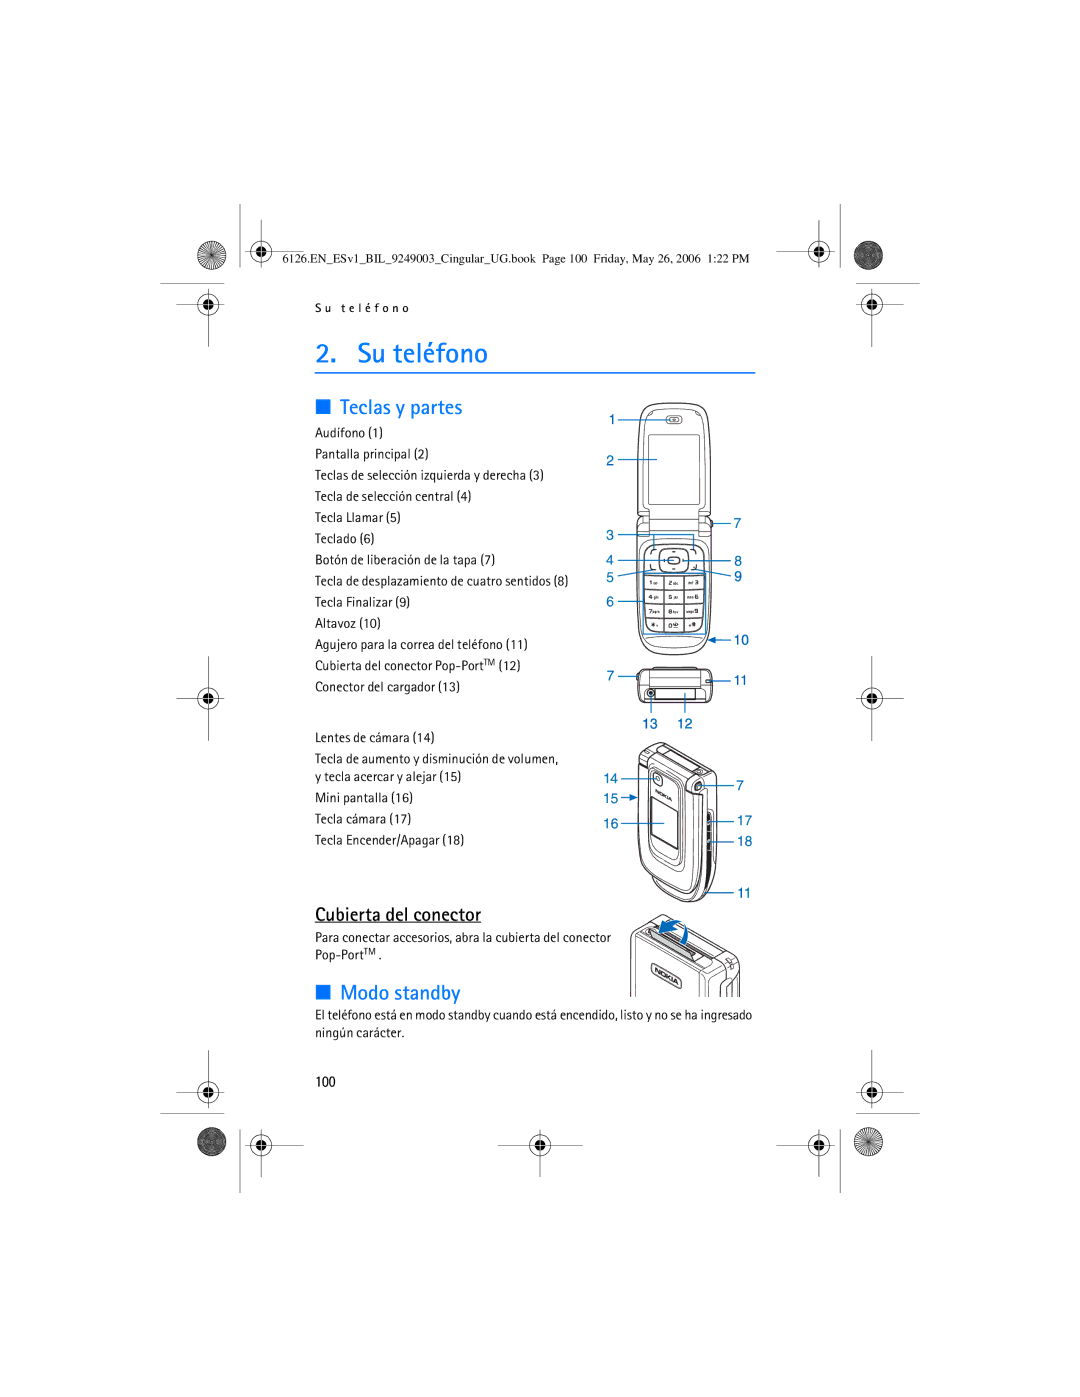 Nokia 6126 manual Su teléfono, Teclas y partes, Modo standby, Cubierta del conector, 100 